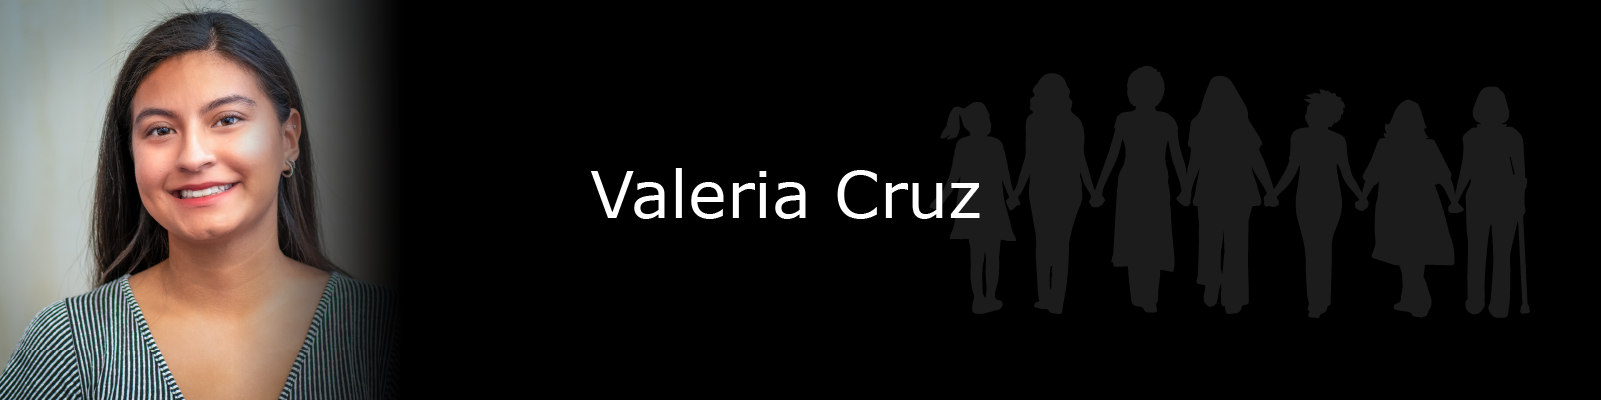 Photo of Valeria Cruz.